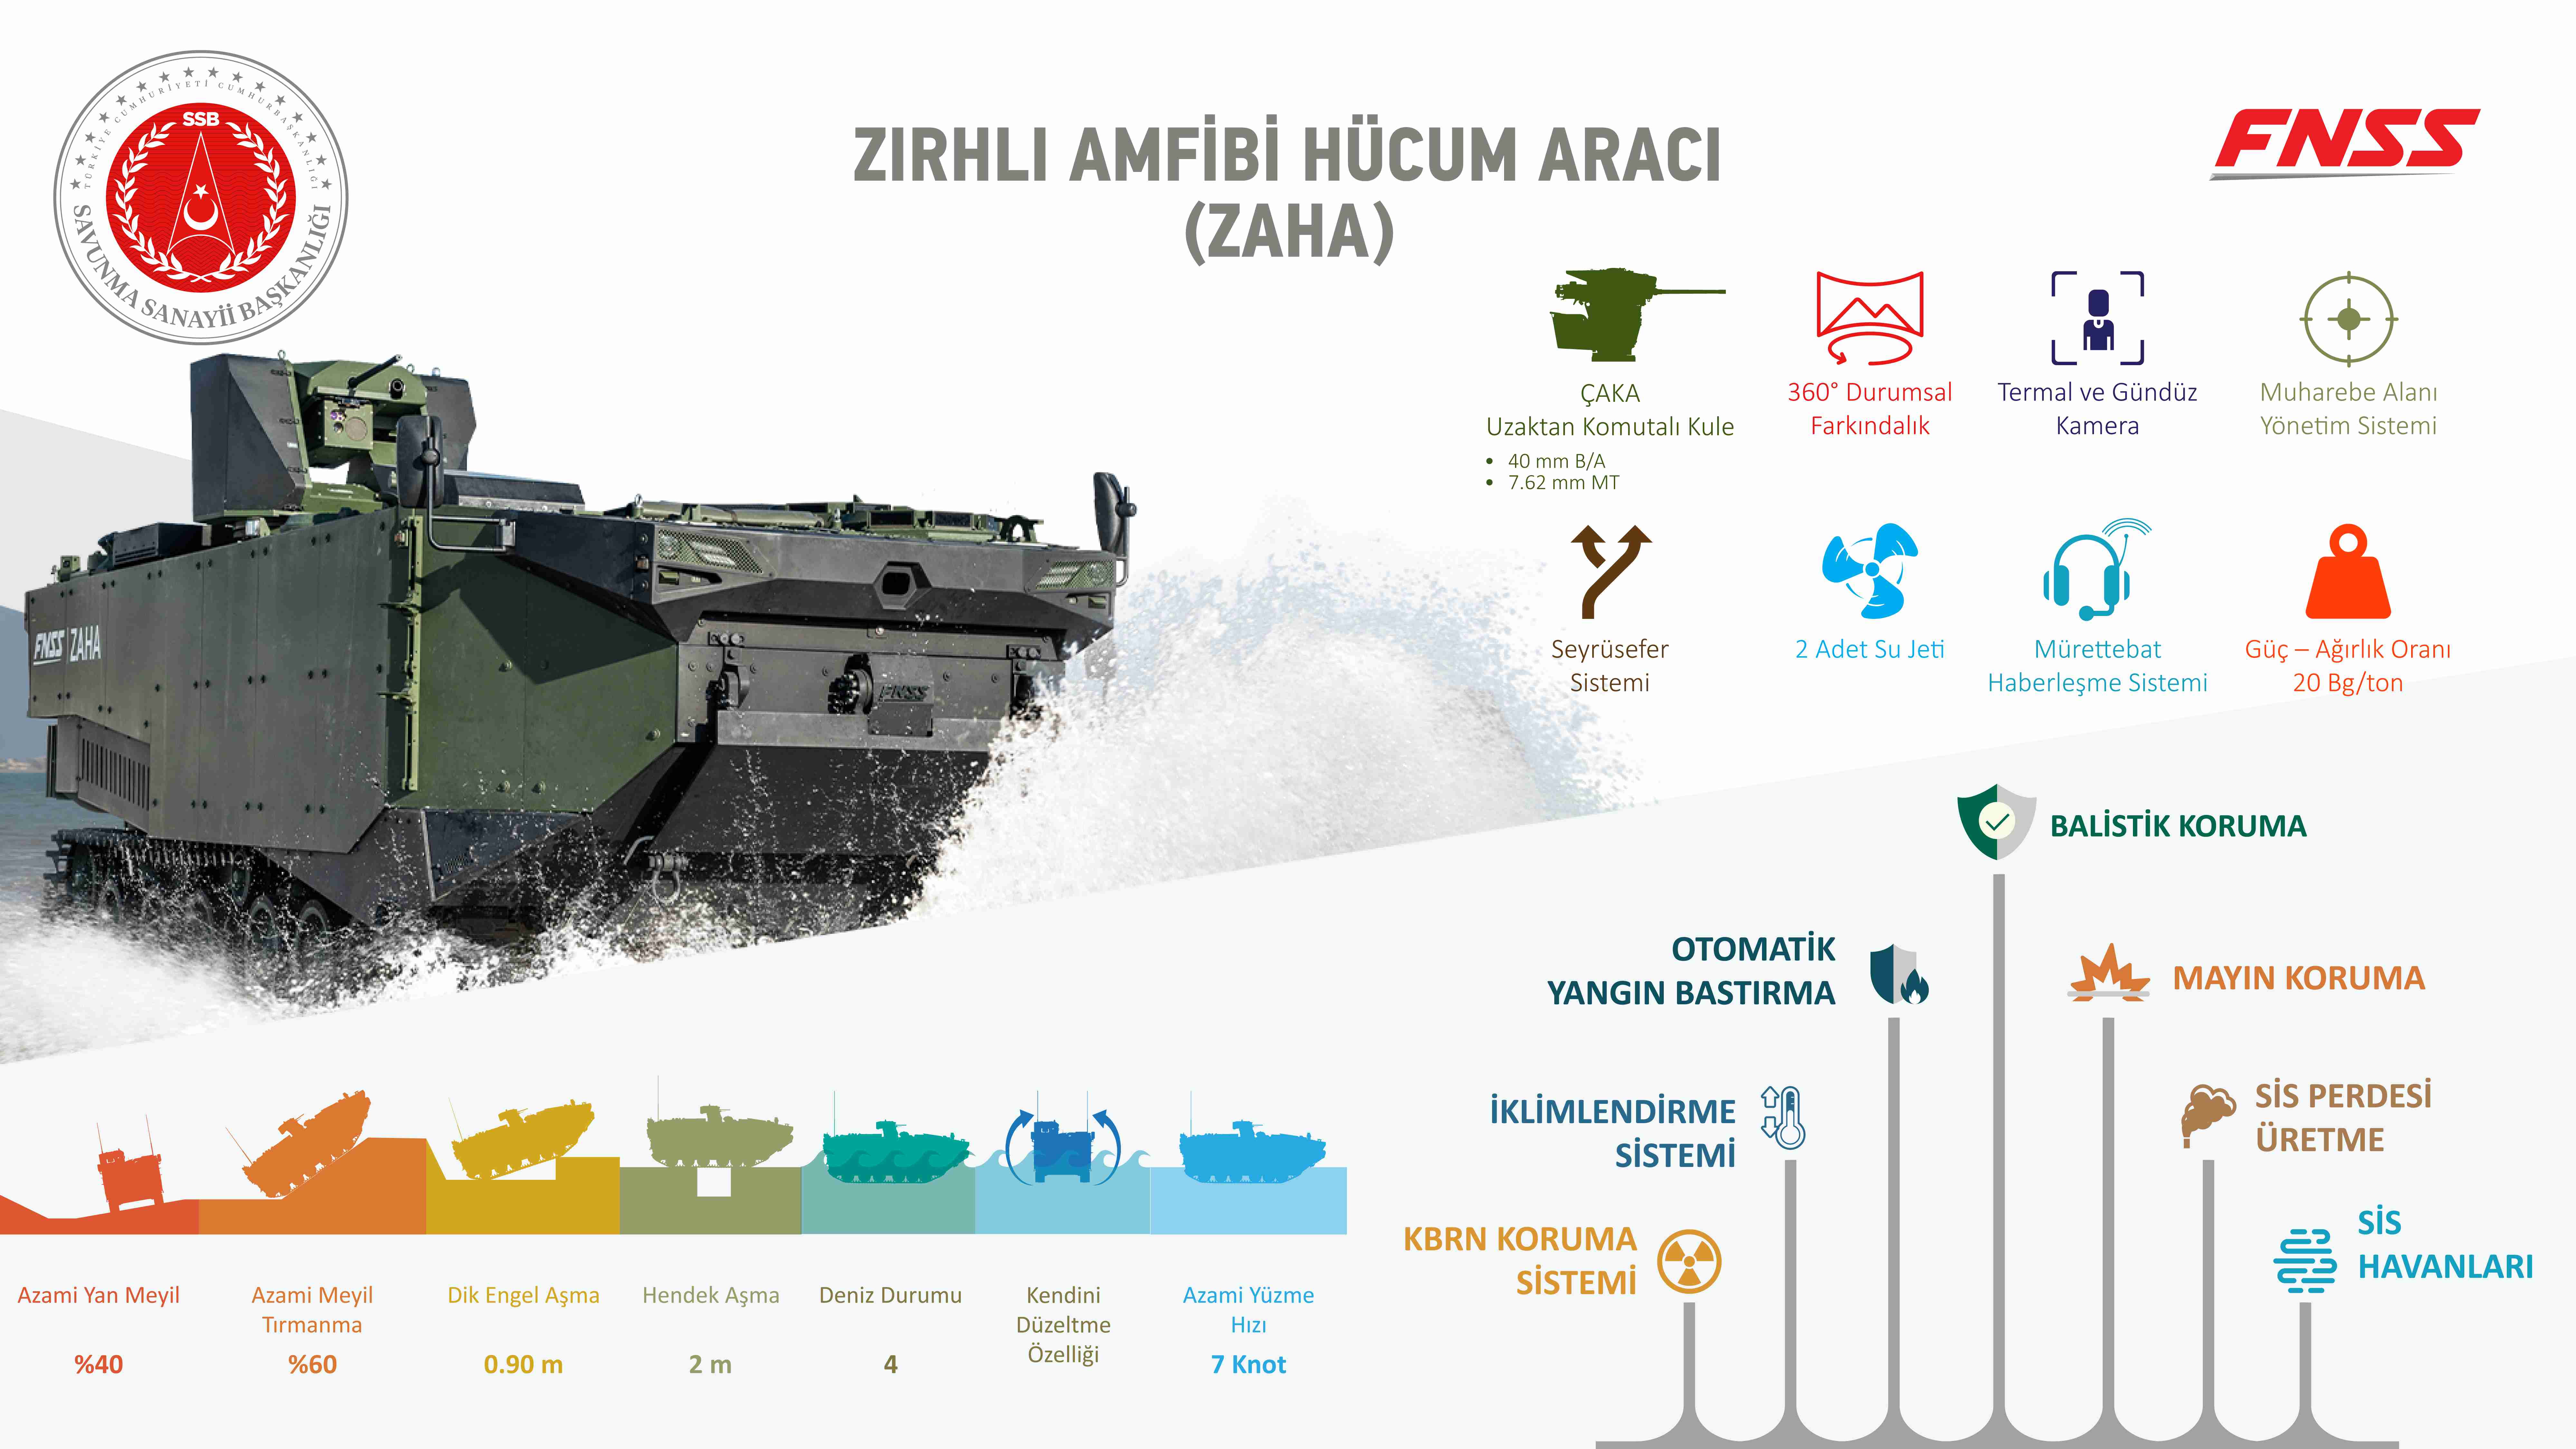 Türk Deniz Kuvvetleri’ne 9 adet ZAHA teslim edildi